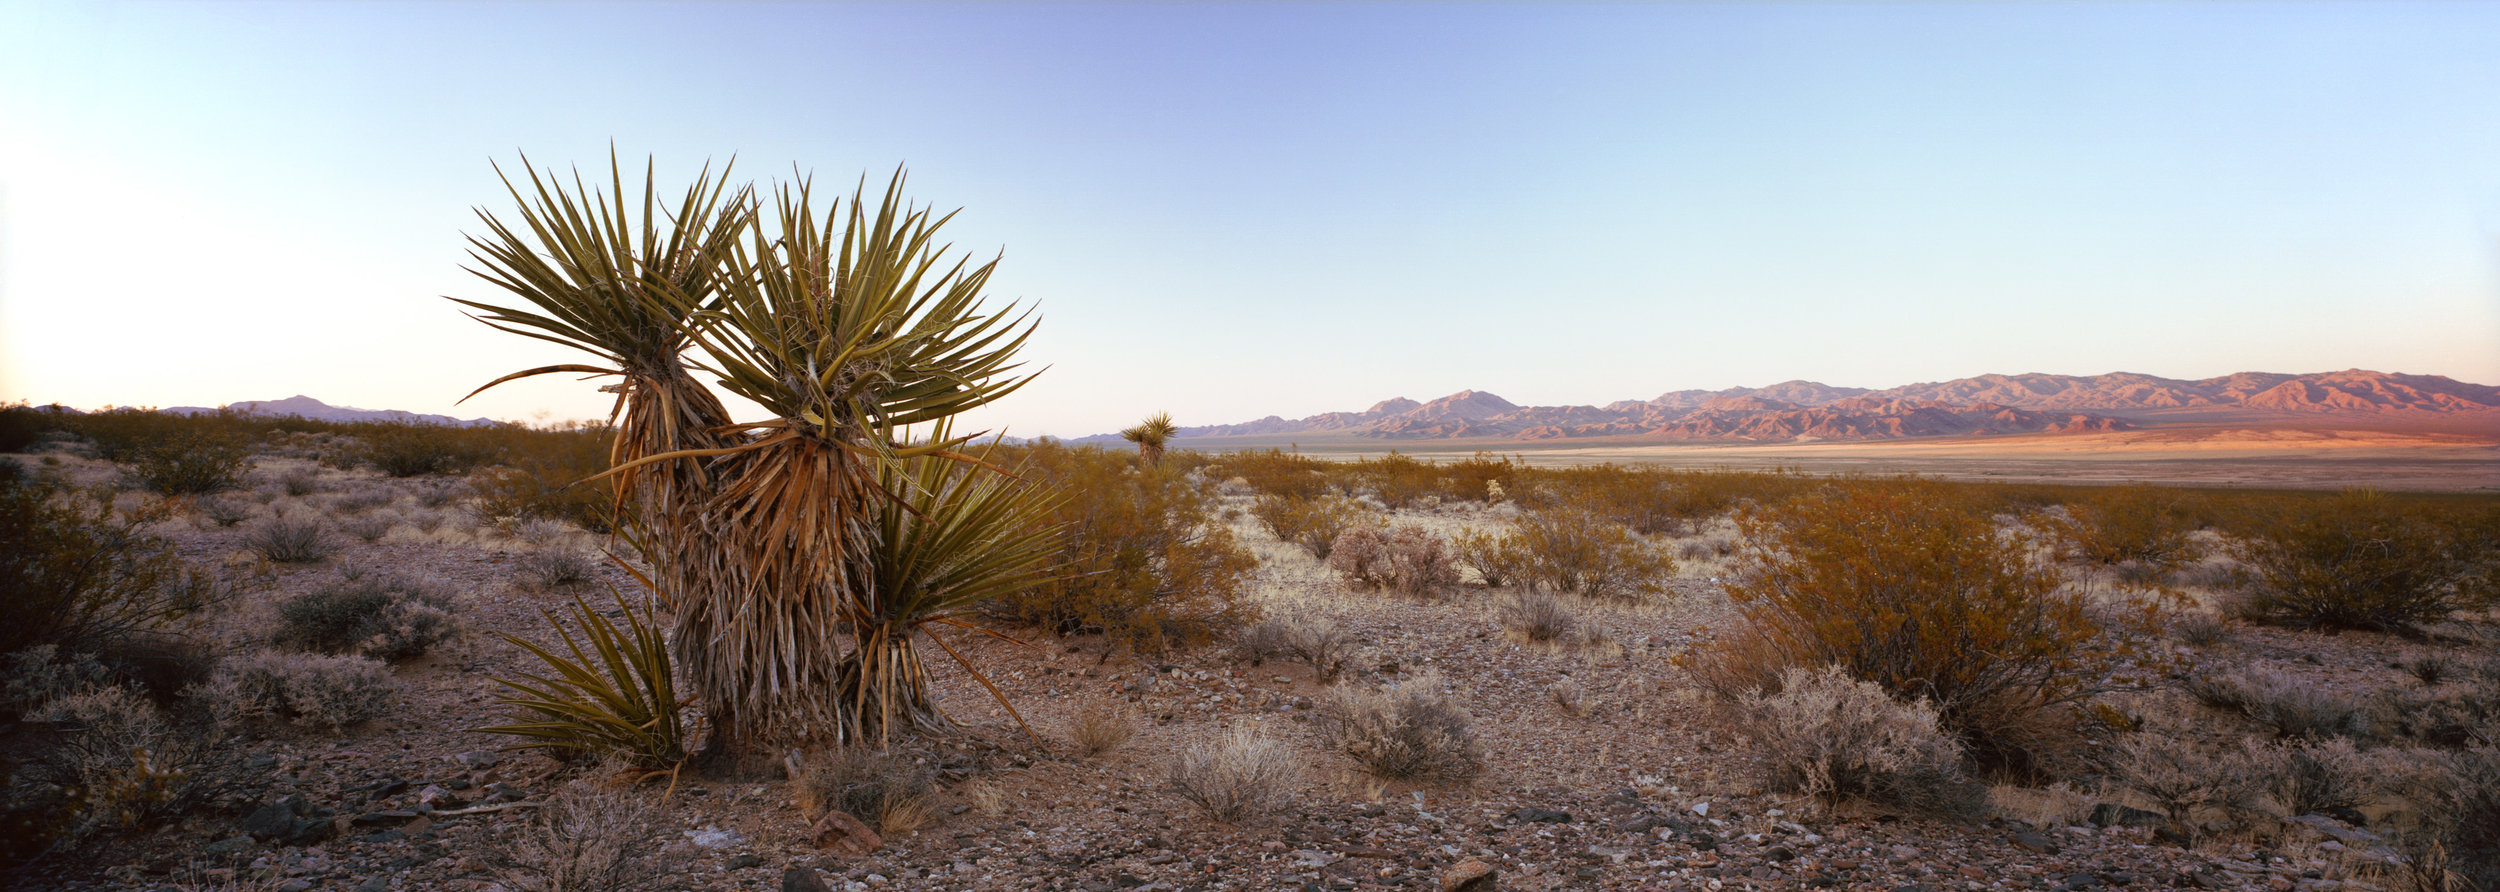  Nevada-California border at sunset, in Mojave National Preserve.  Ektar 100, 4 sec, f/22. 